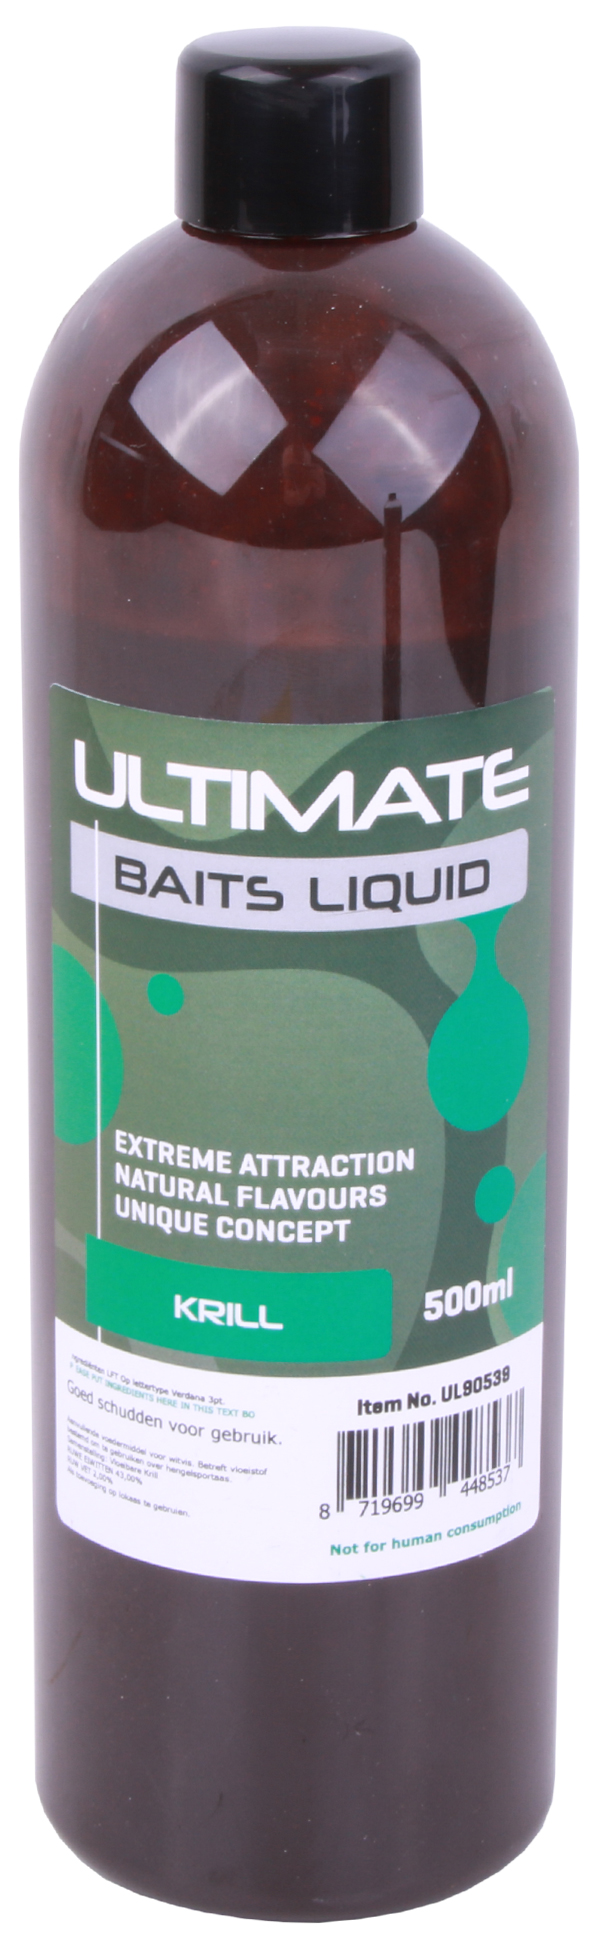 Ultimate Baits Liquid 500ml - Krill